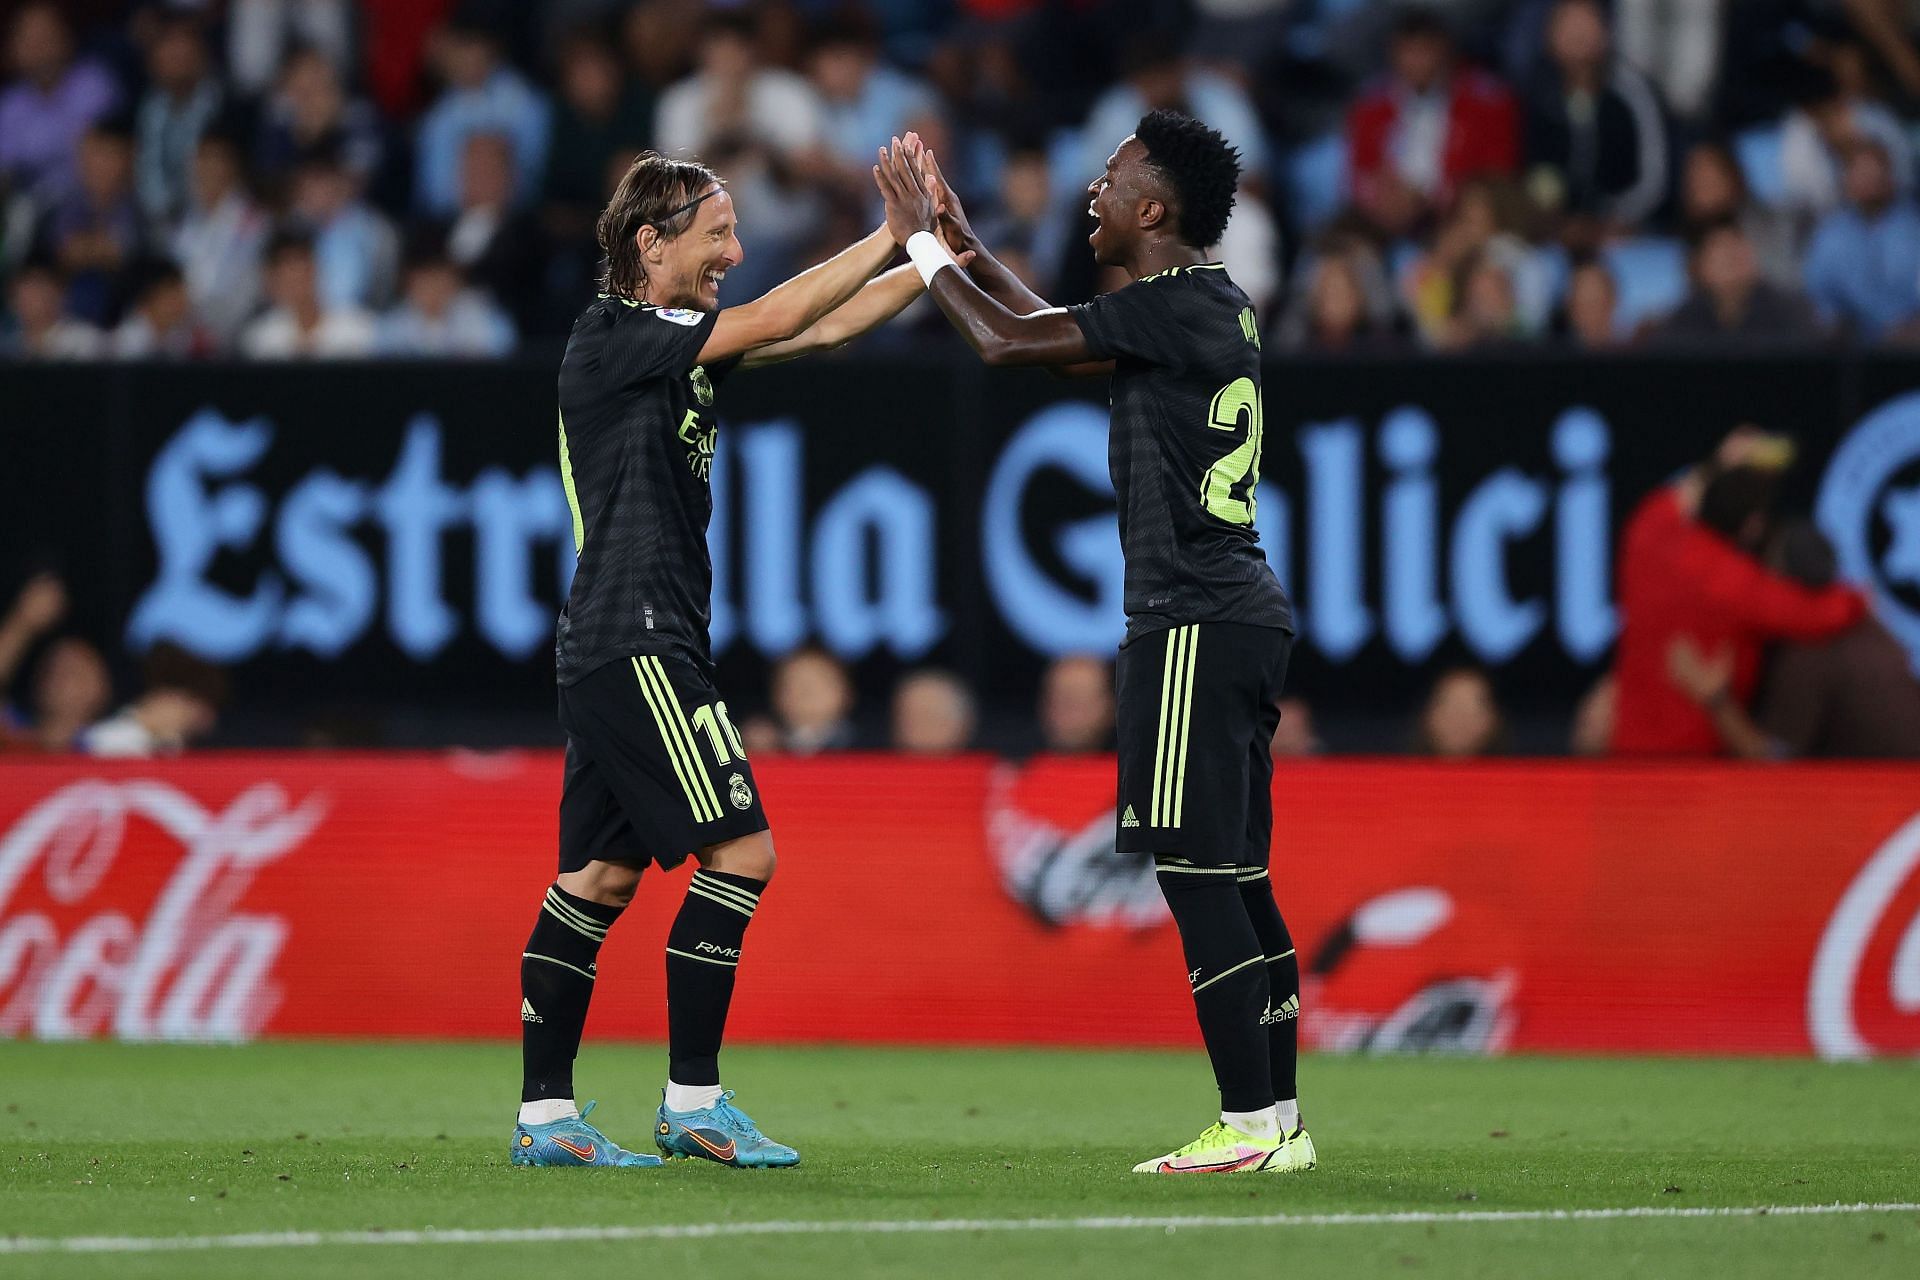 Luka Modric celebrates after scoring